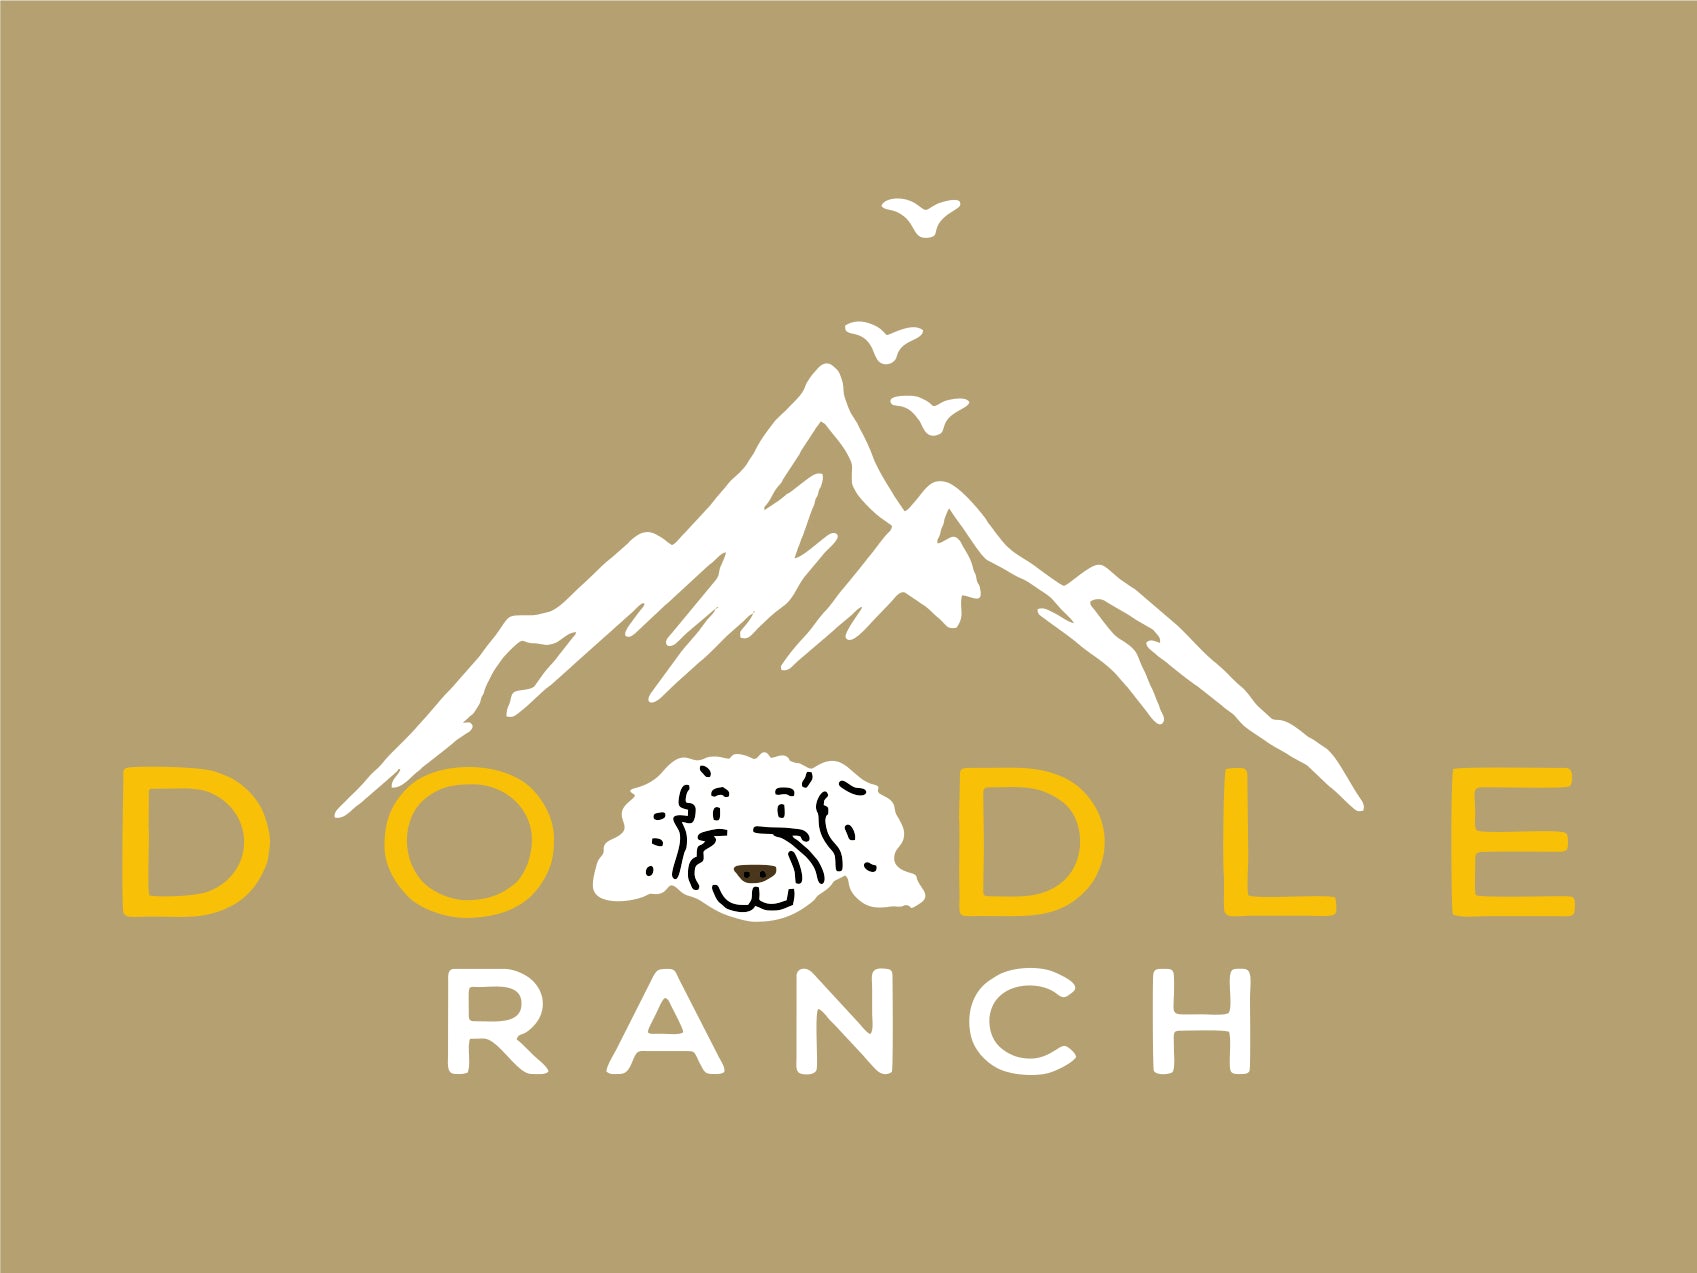 Doodle Ranch §